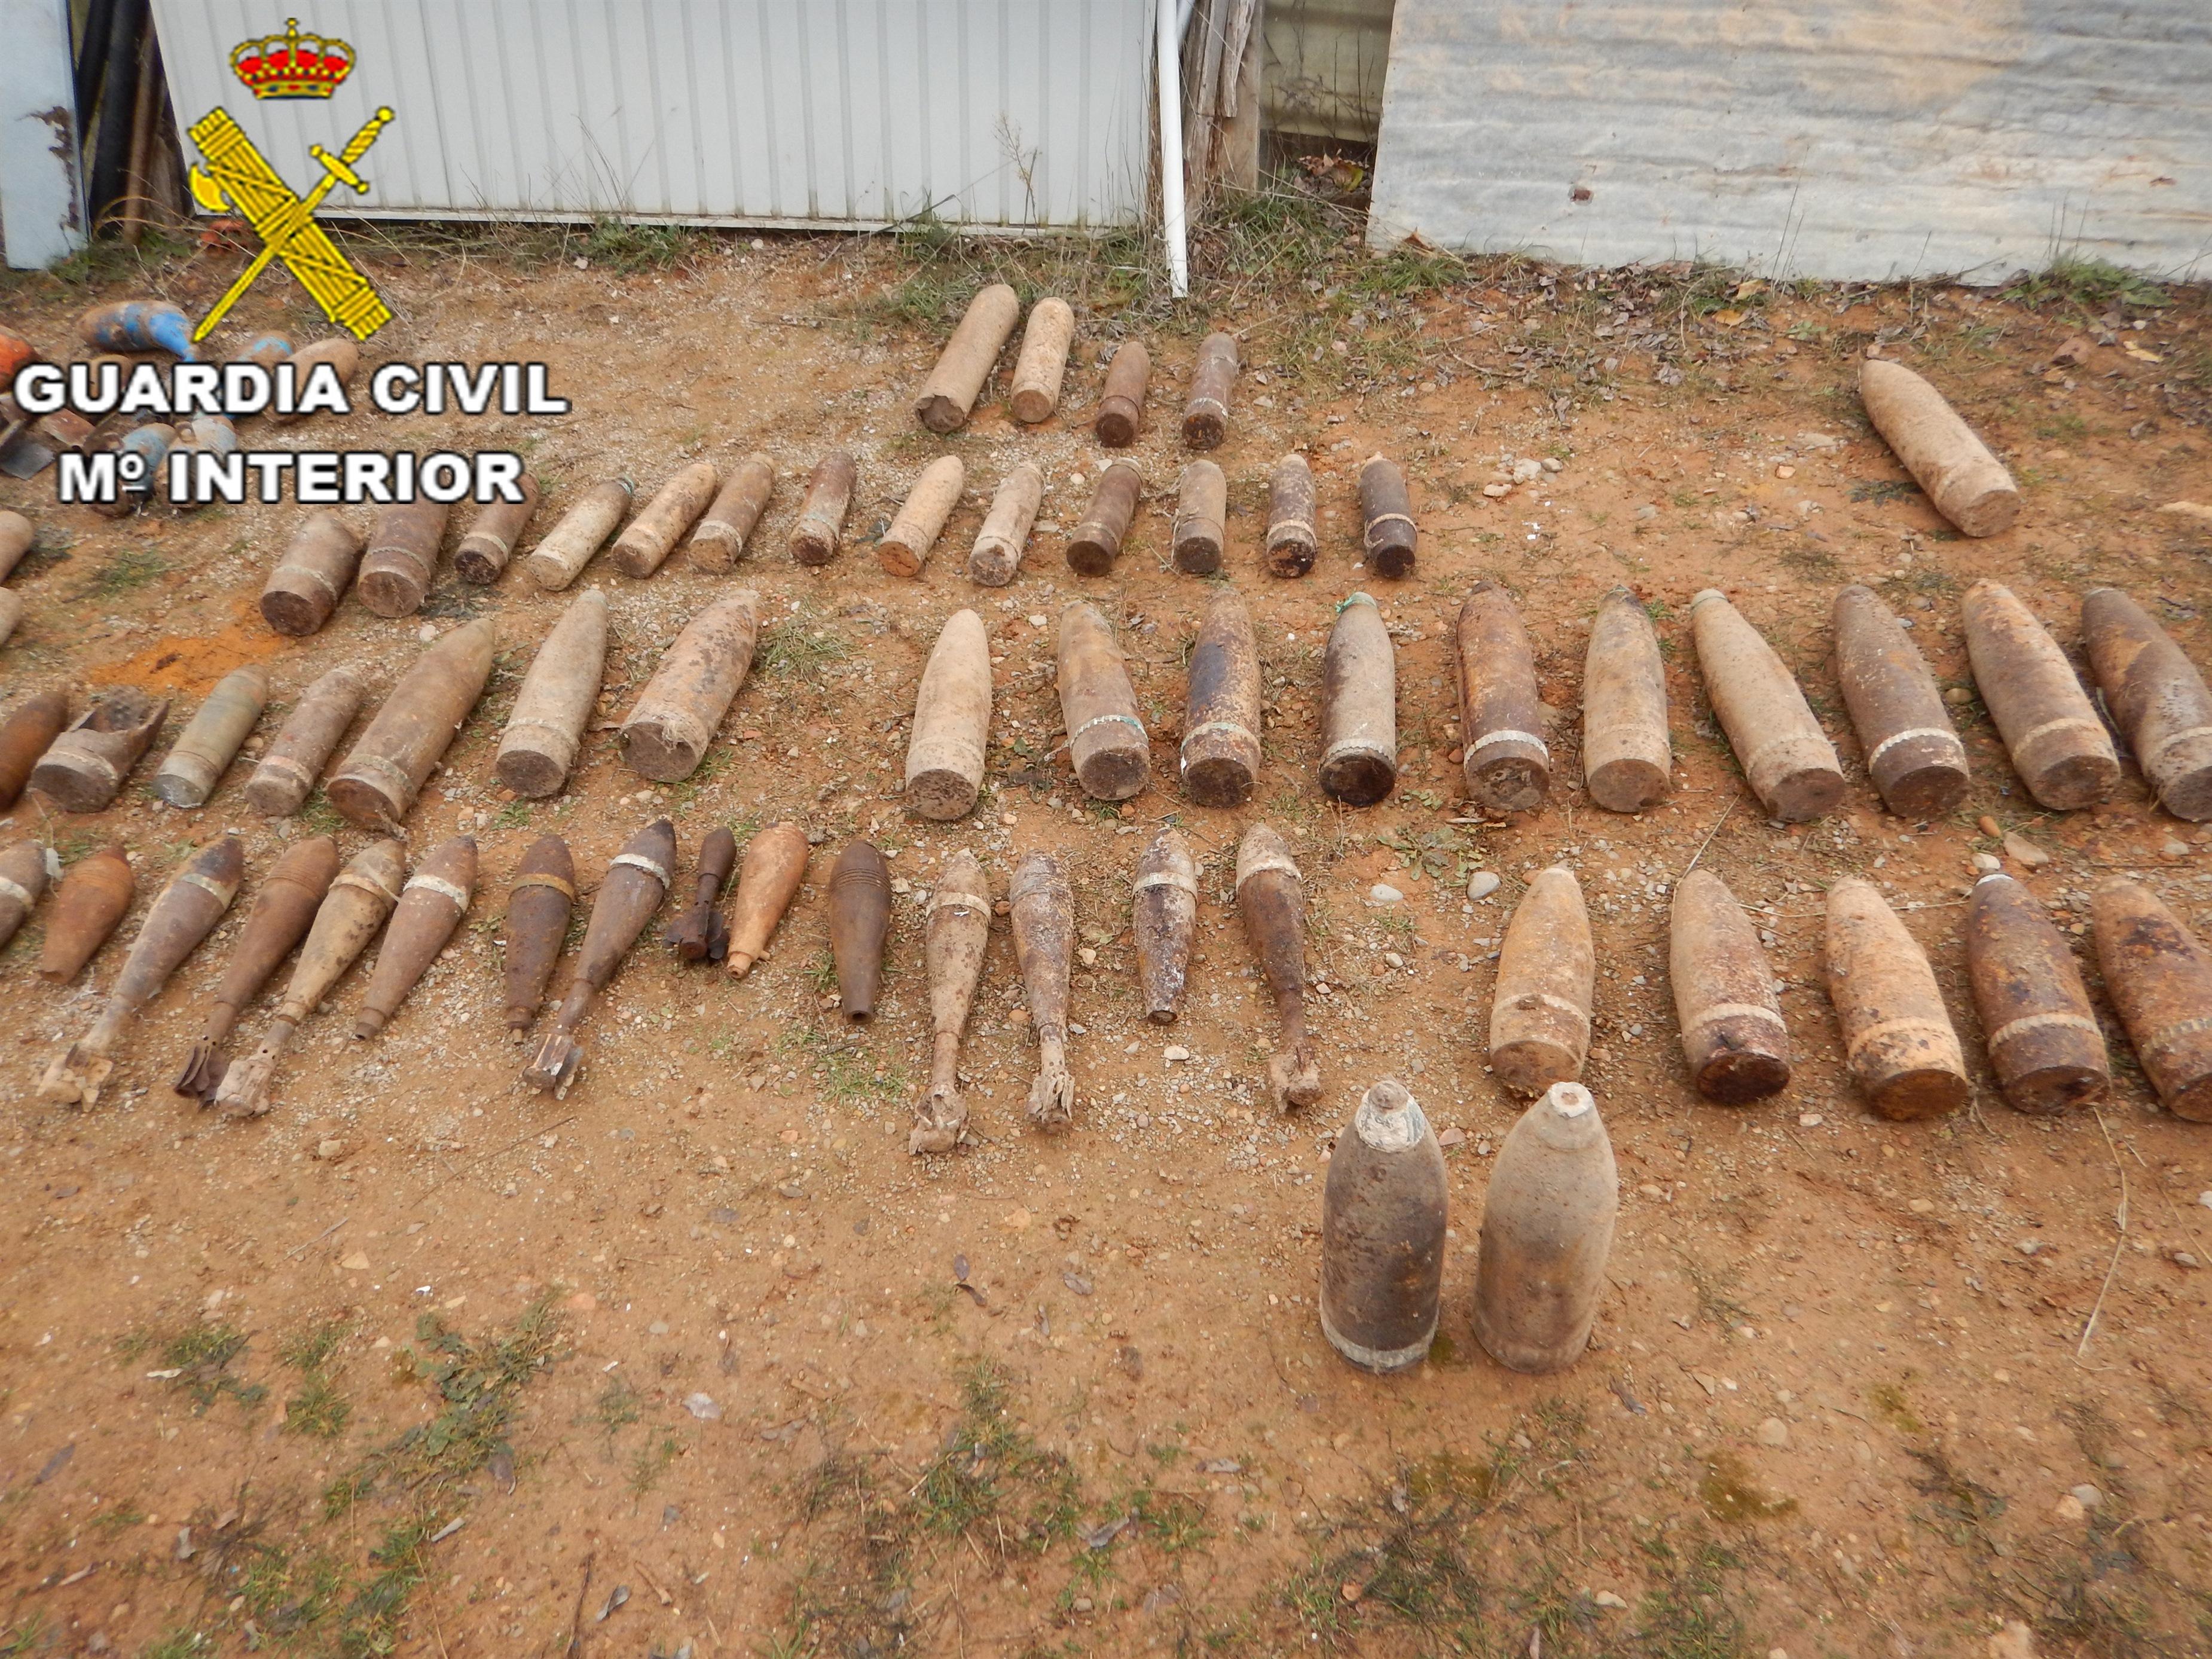 Desactivados 161 artefactos explosivos de la Guerra Civil en una finca de Teruel. EP 